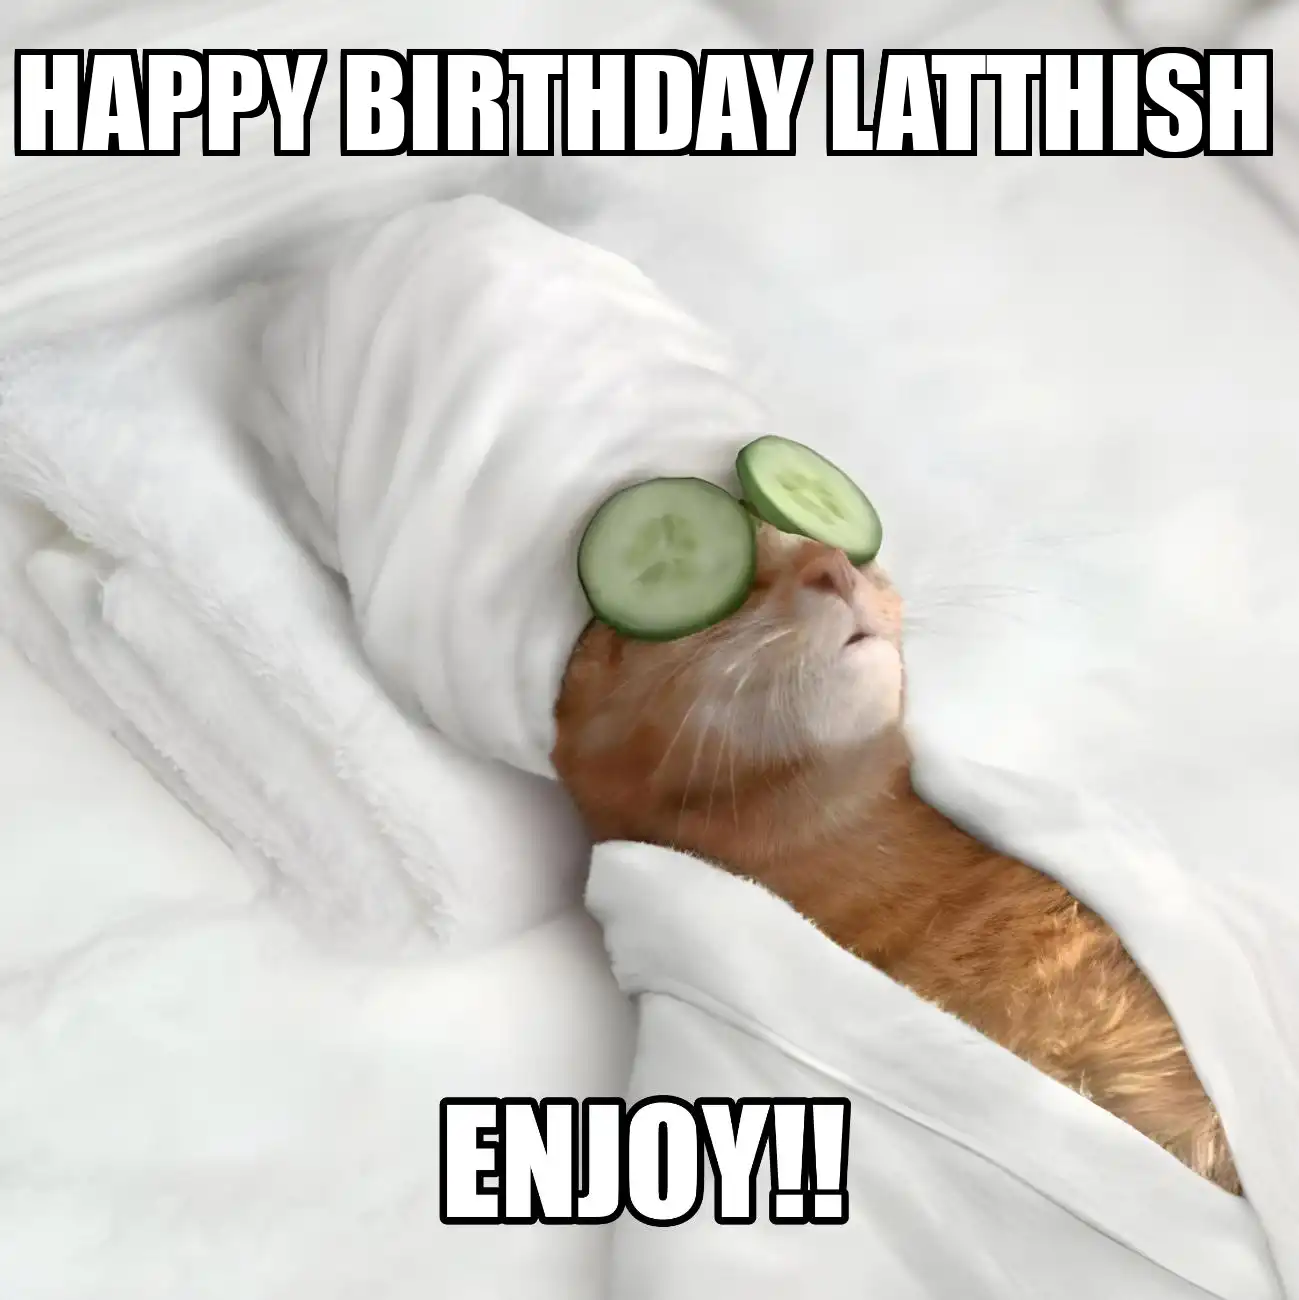 Happy Birthday Latthish Enjoy Cat Meme